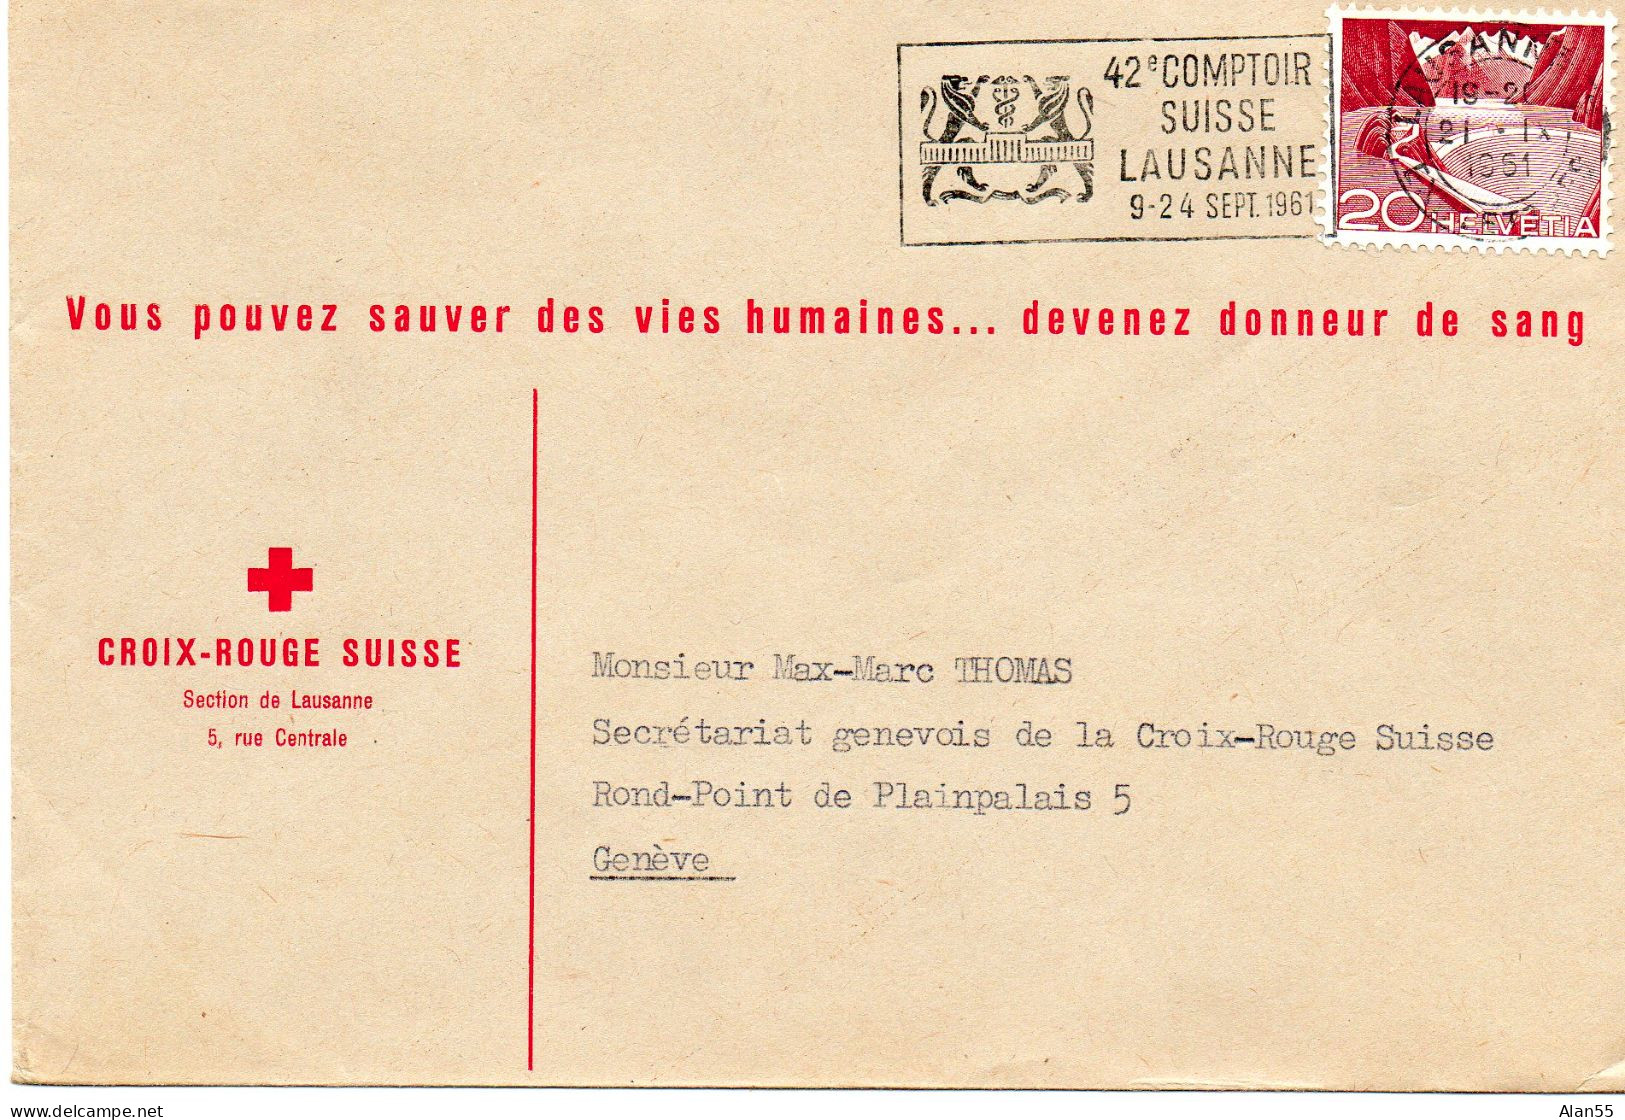 SUISSE.1951.  "42e COMPTOIR SUISSE LAUSANNE…". CROIX-ROUGE SUISSE - Fabbriche E Imprese